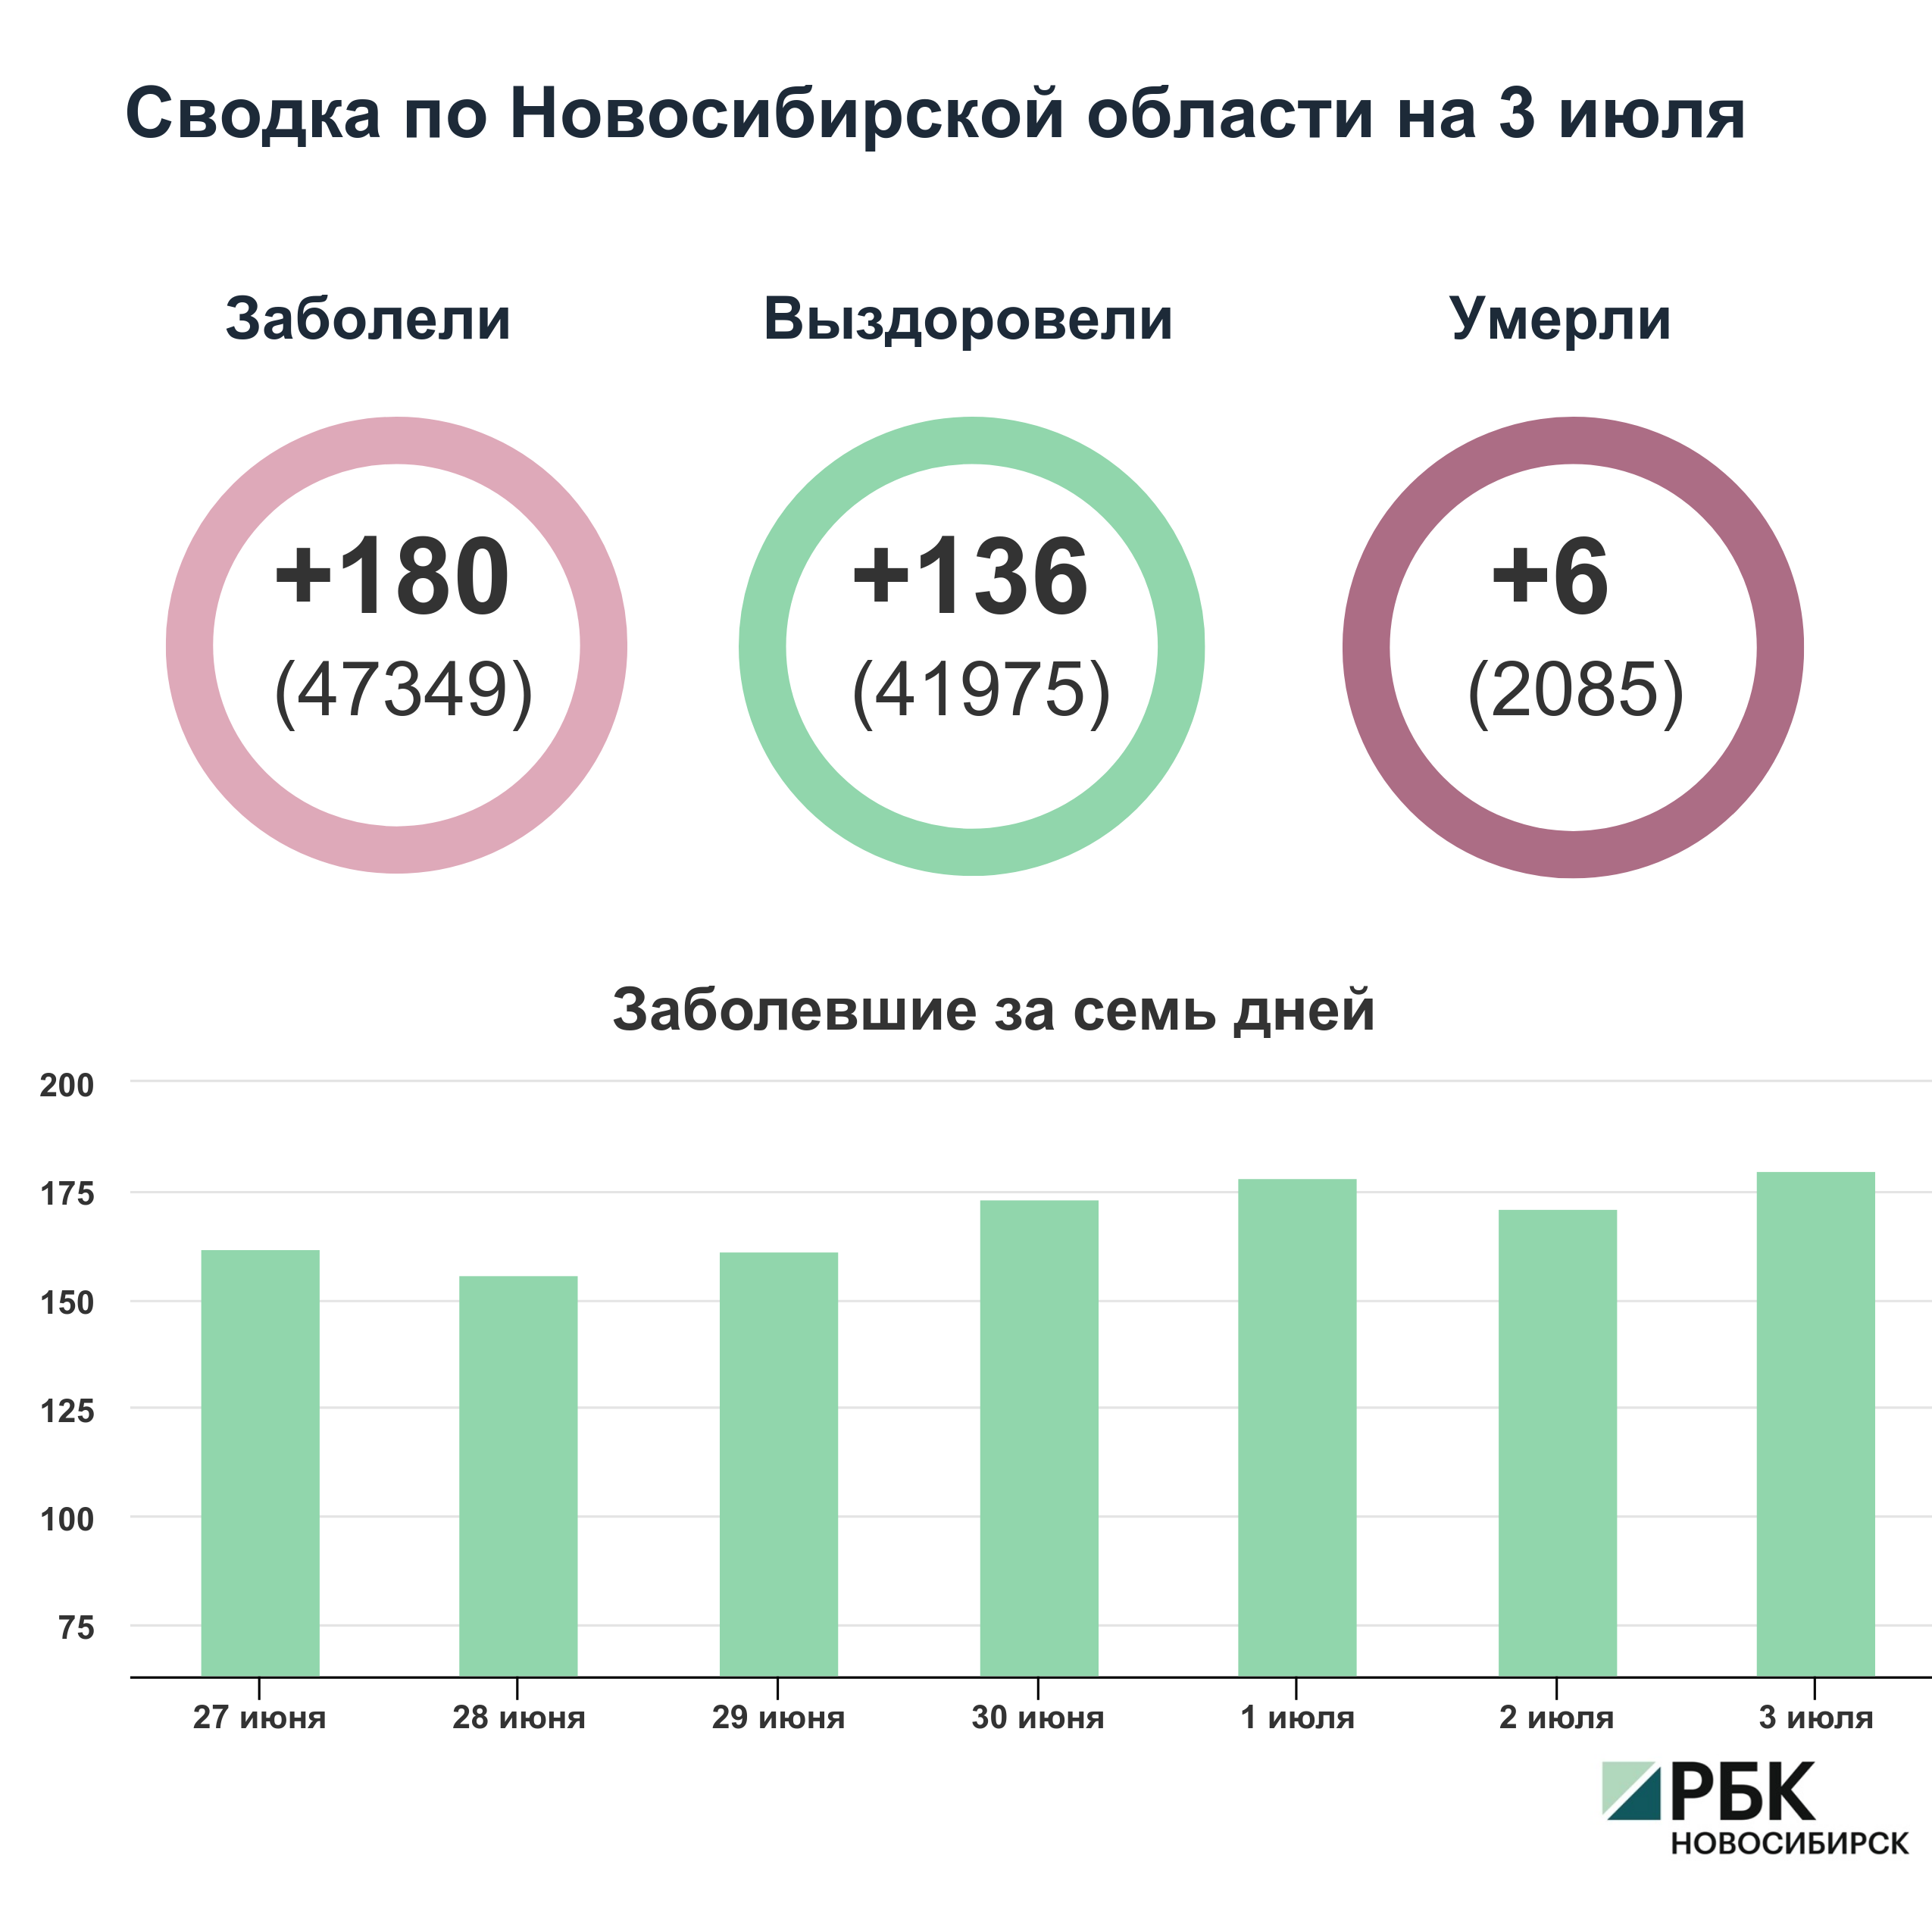 Коронавирус в Новосибирске: сводка на 3 июля